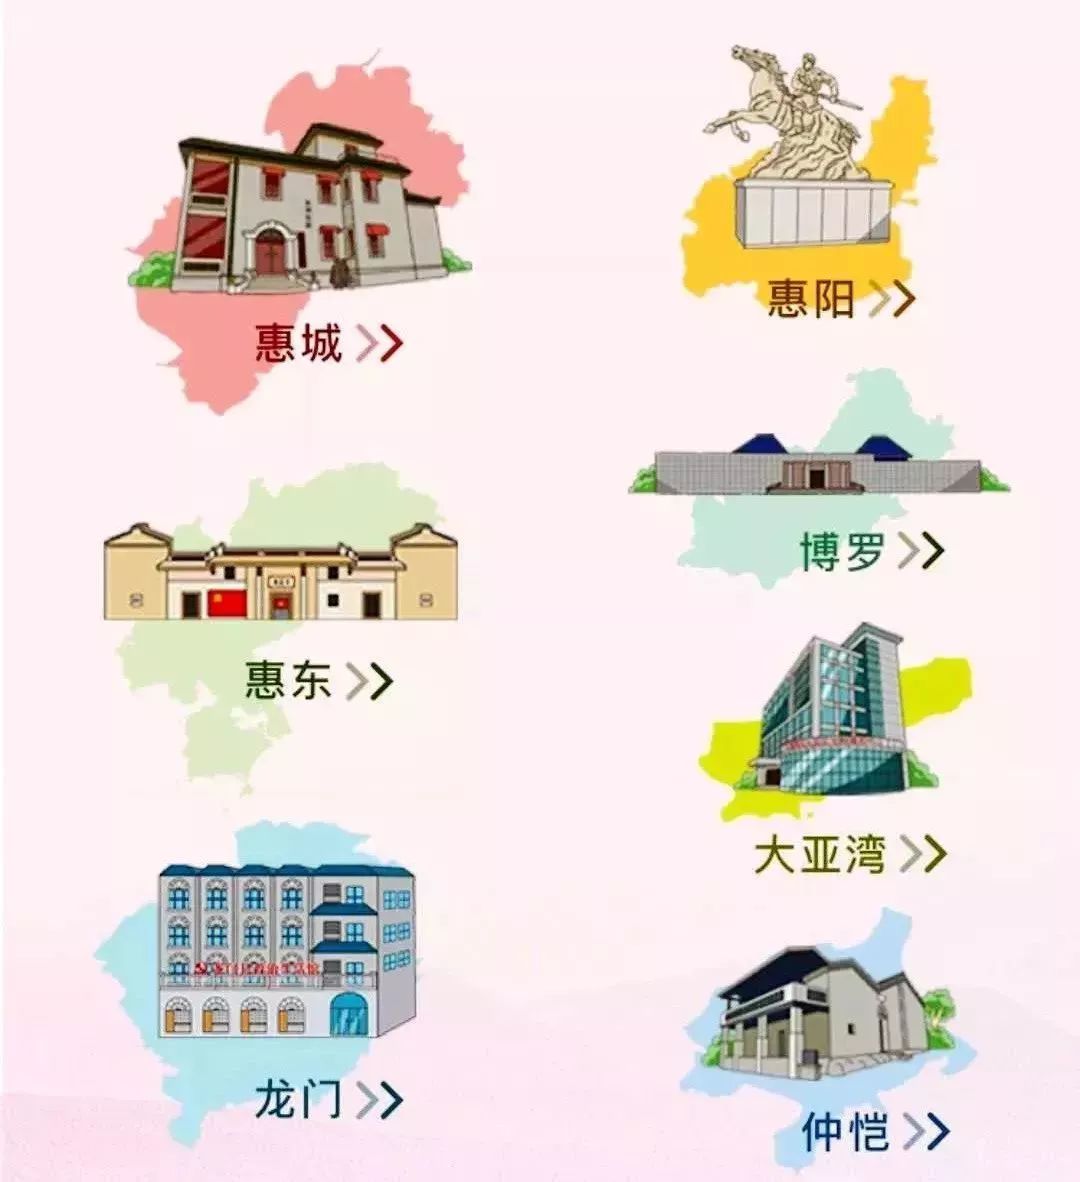 文明龙门这份风靡惠州的手绘地图看过了吗